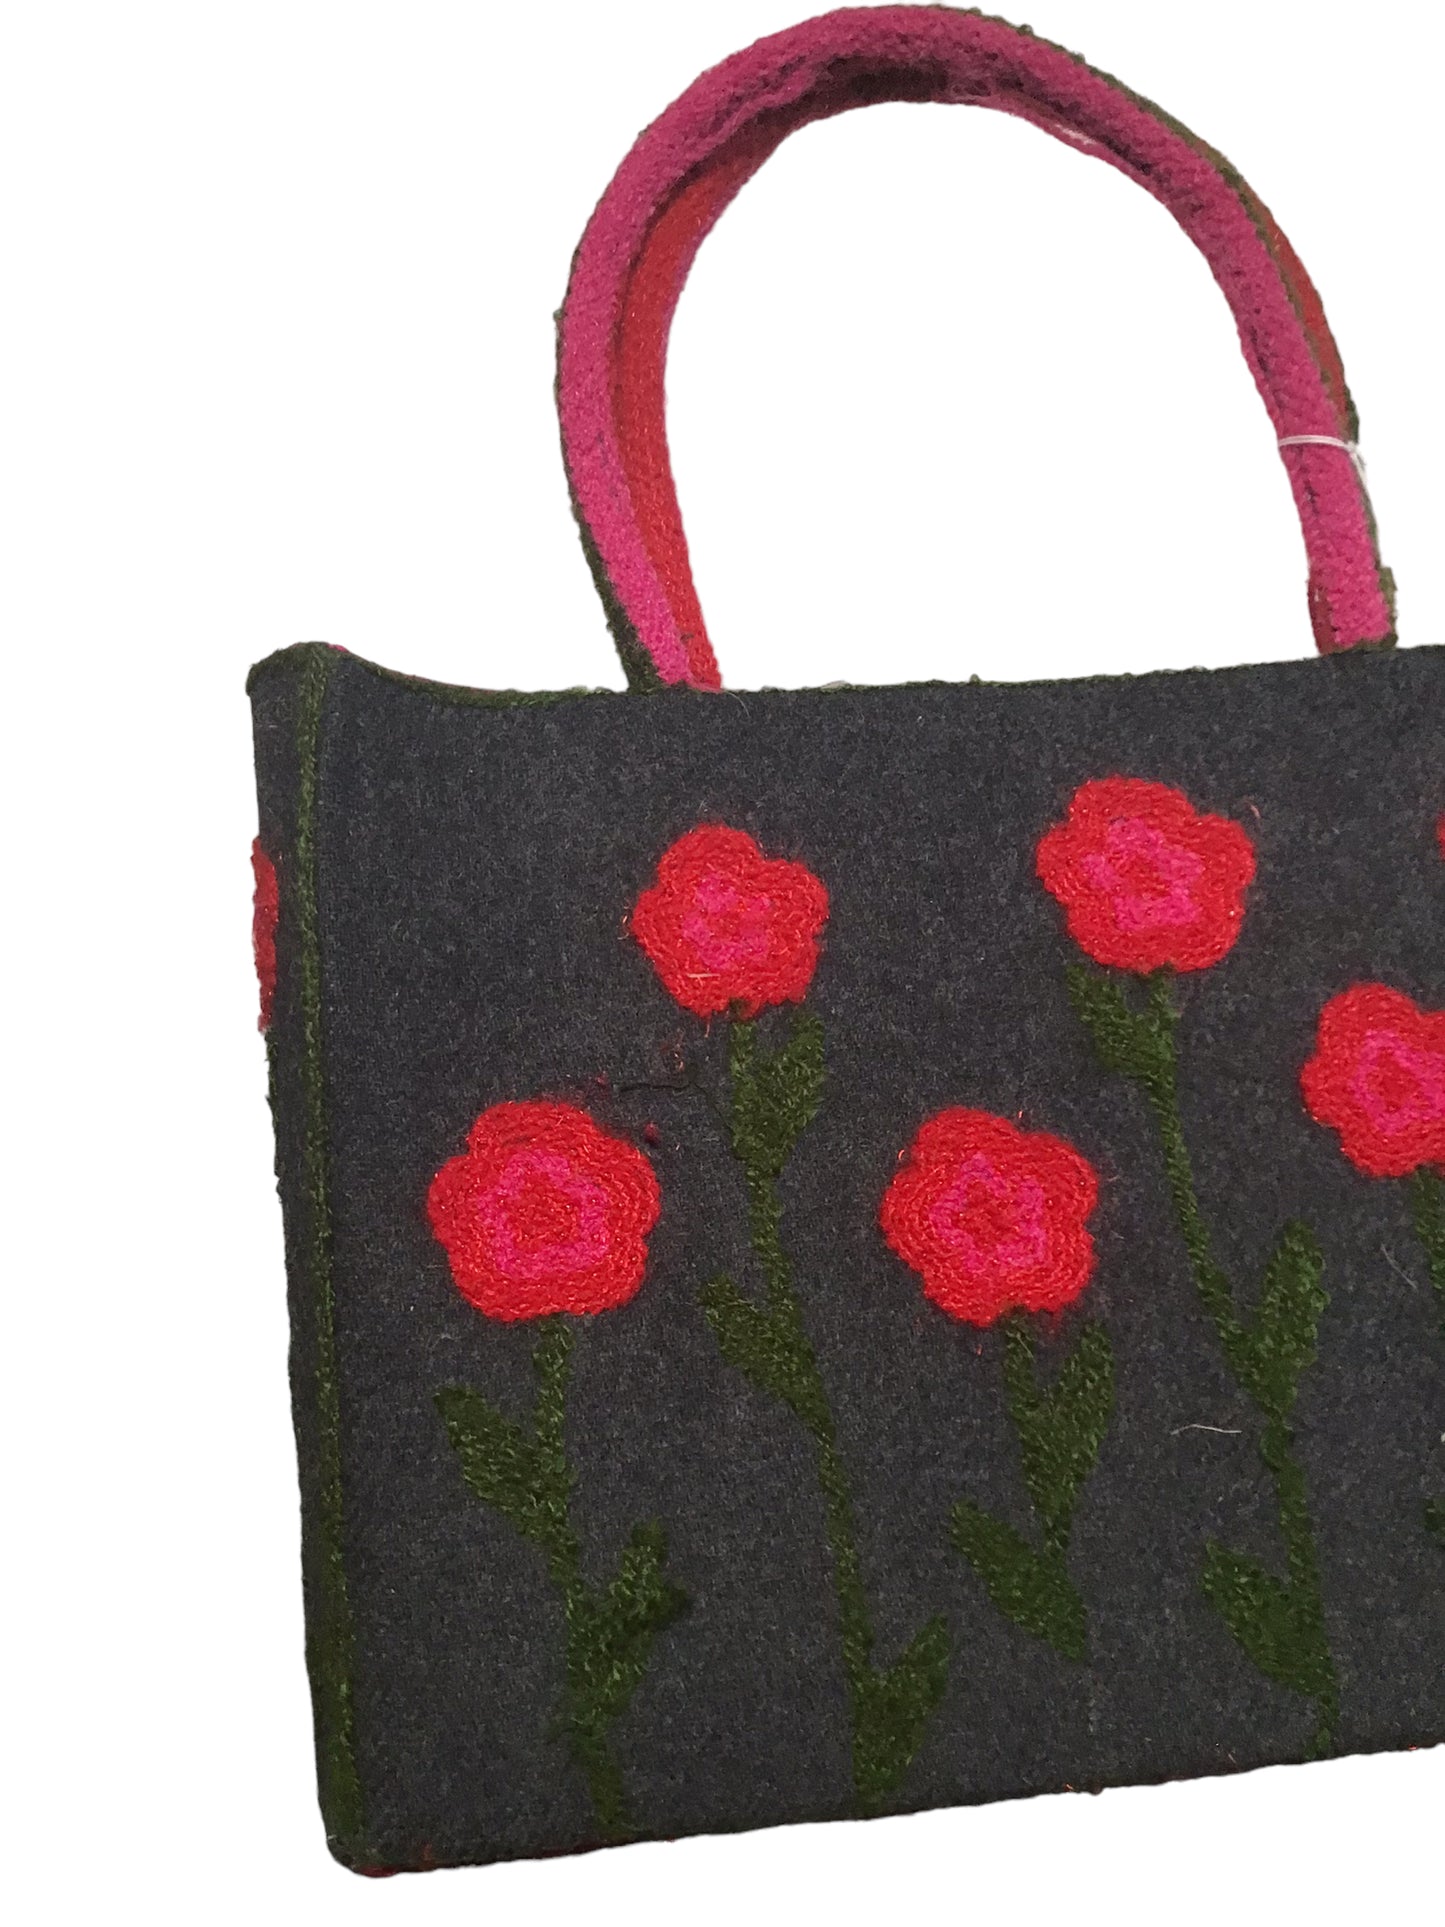 Embroidered Handbag (W13xH9.5)